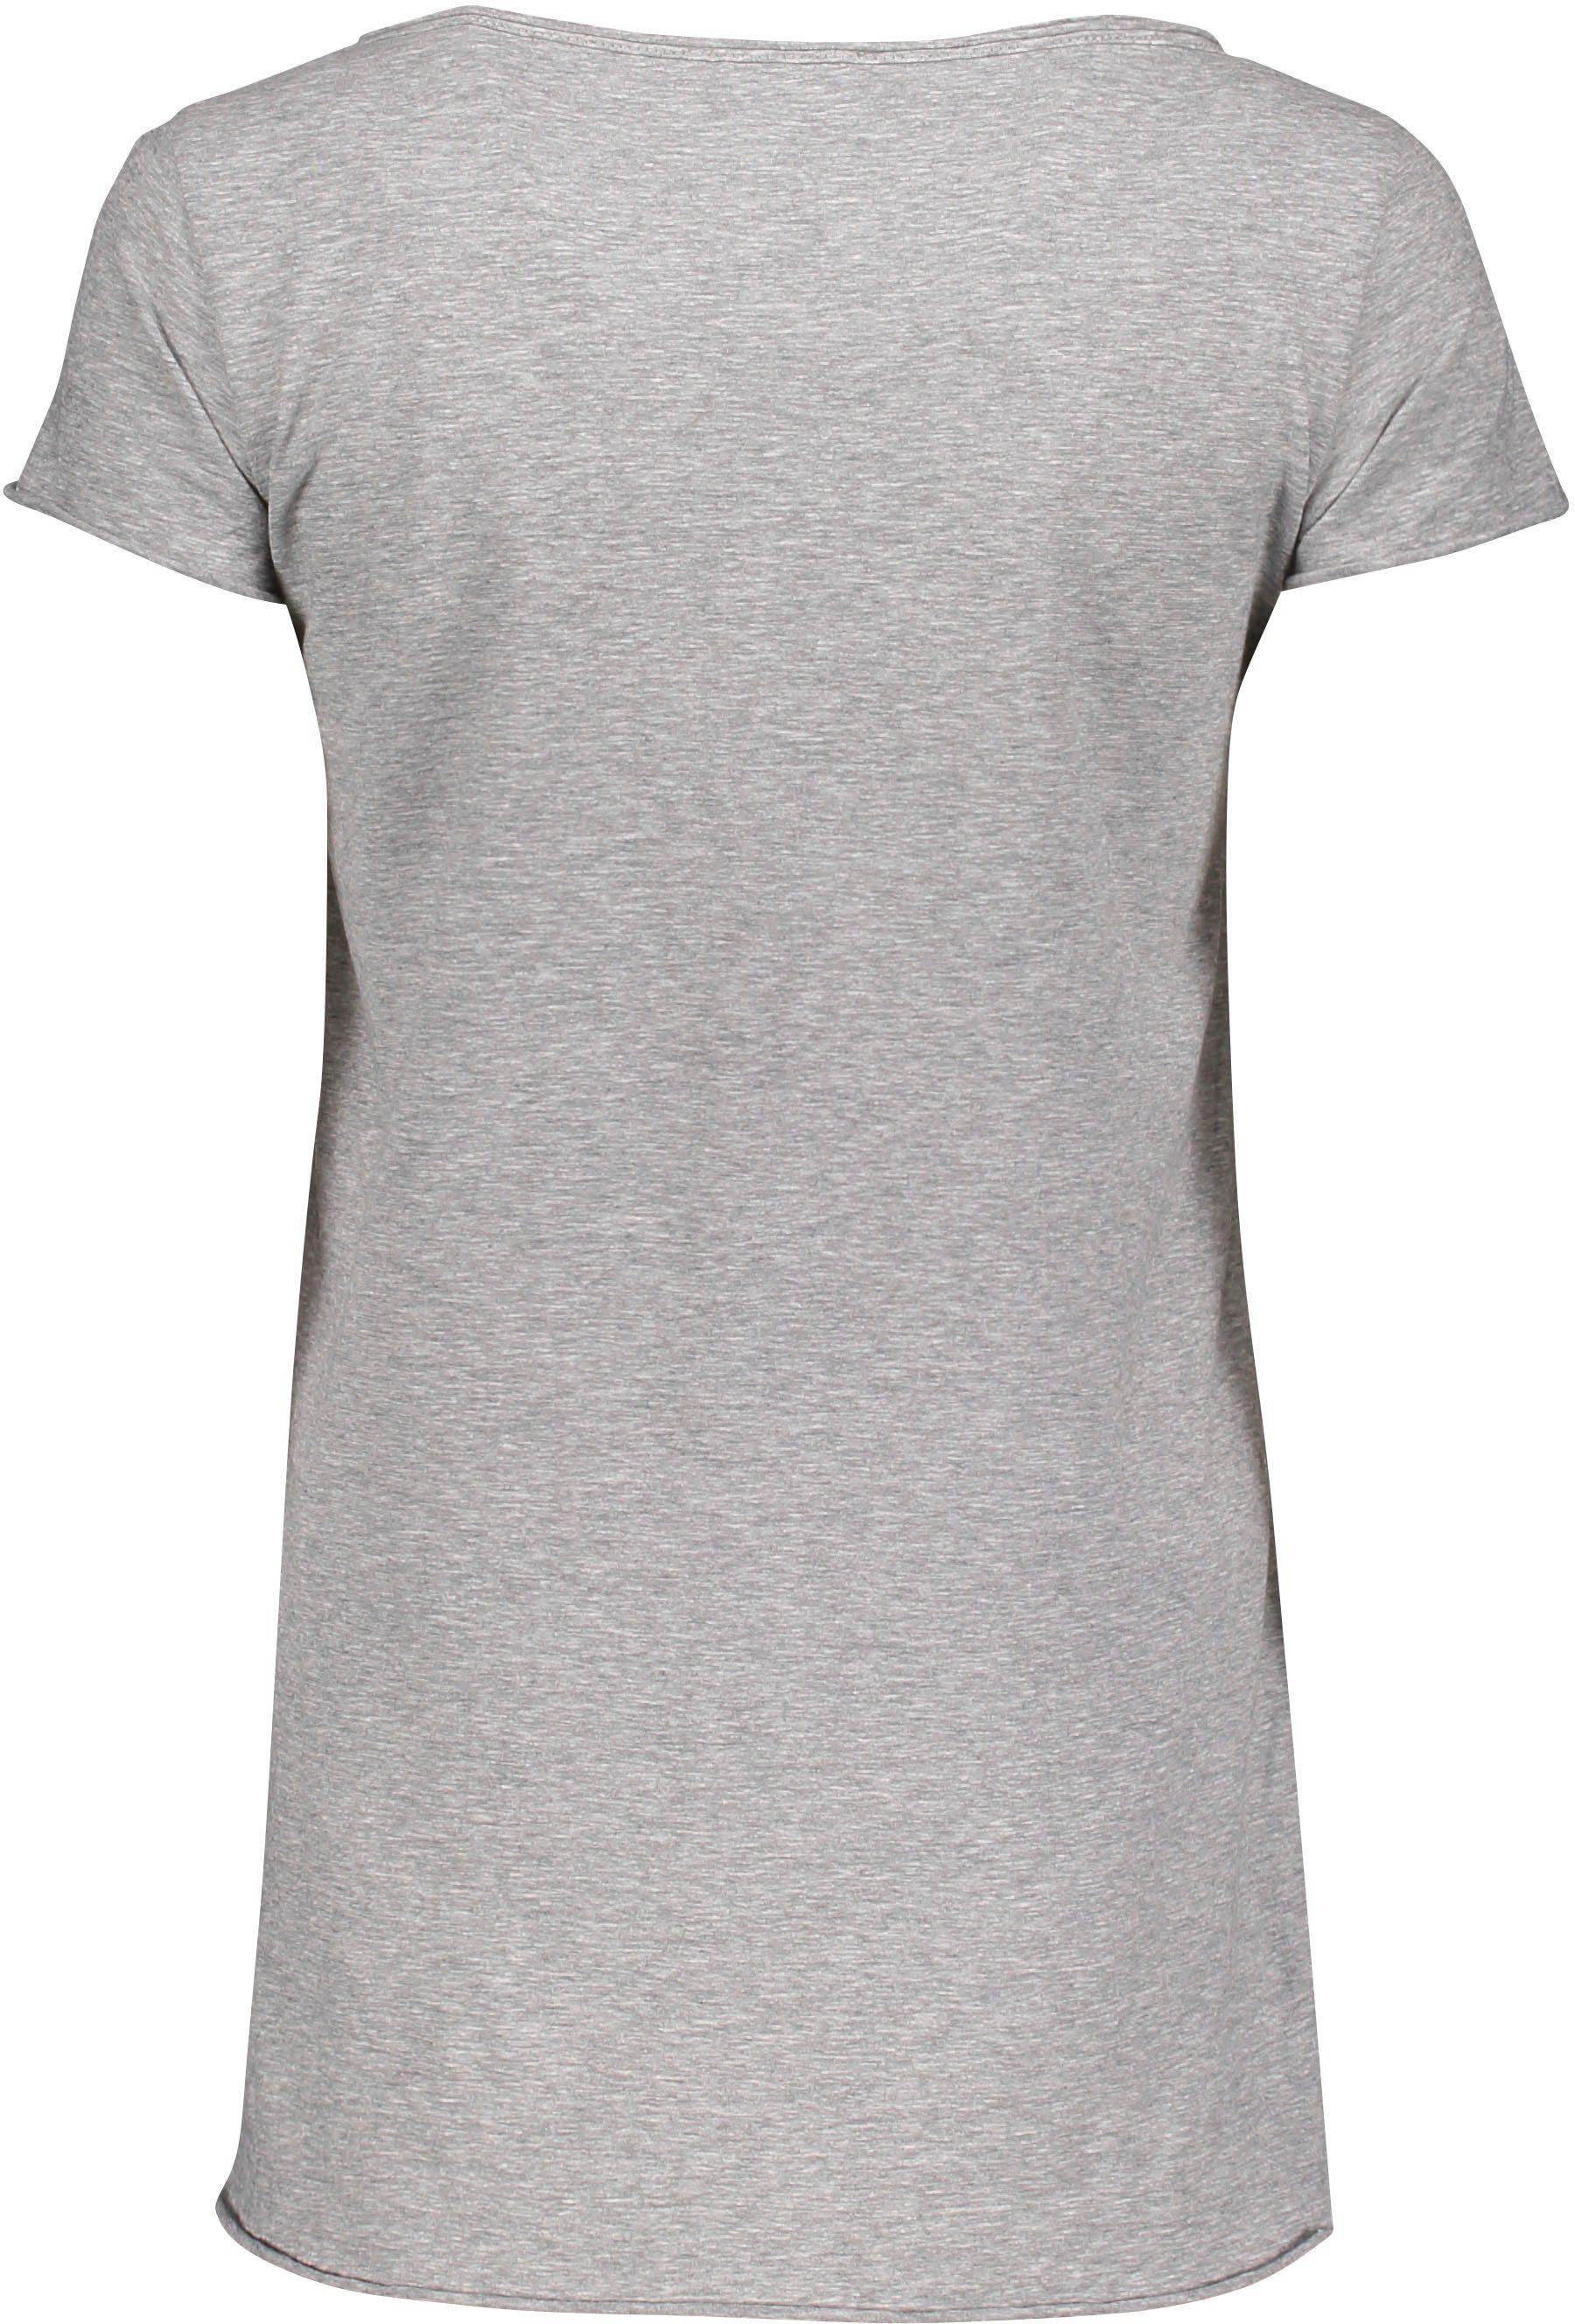 Please Jeans T-Shirt M00A mit Saumabschlüssen angeschnittenen Please leicht 1907 meliert) Metal-Label melange grigio und (grau